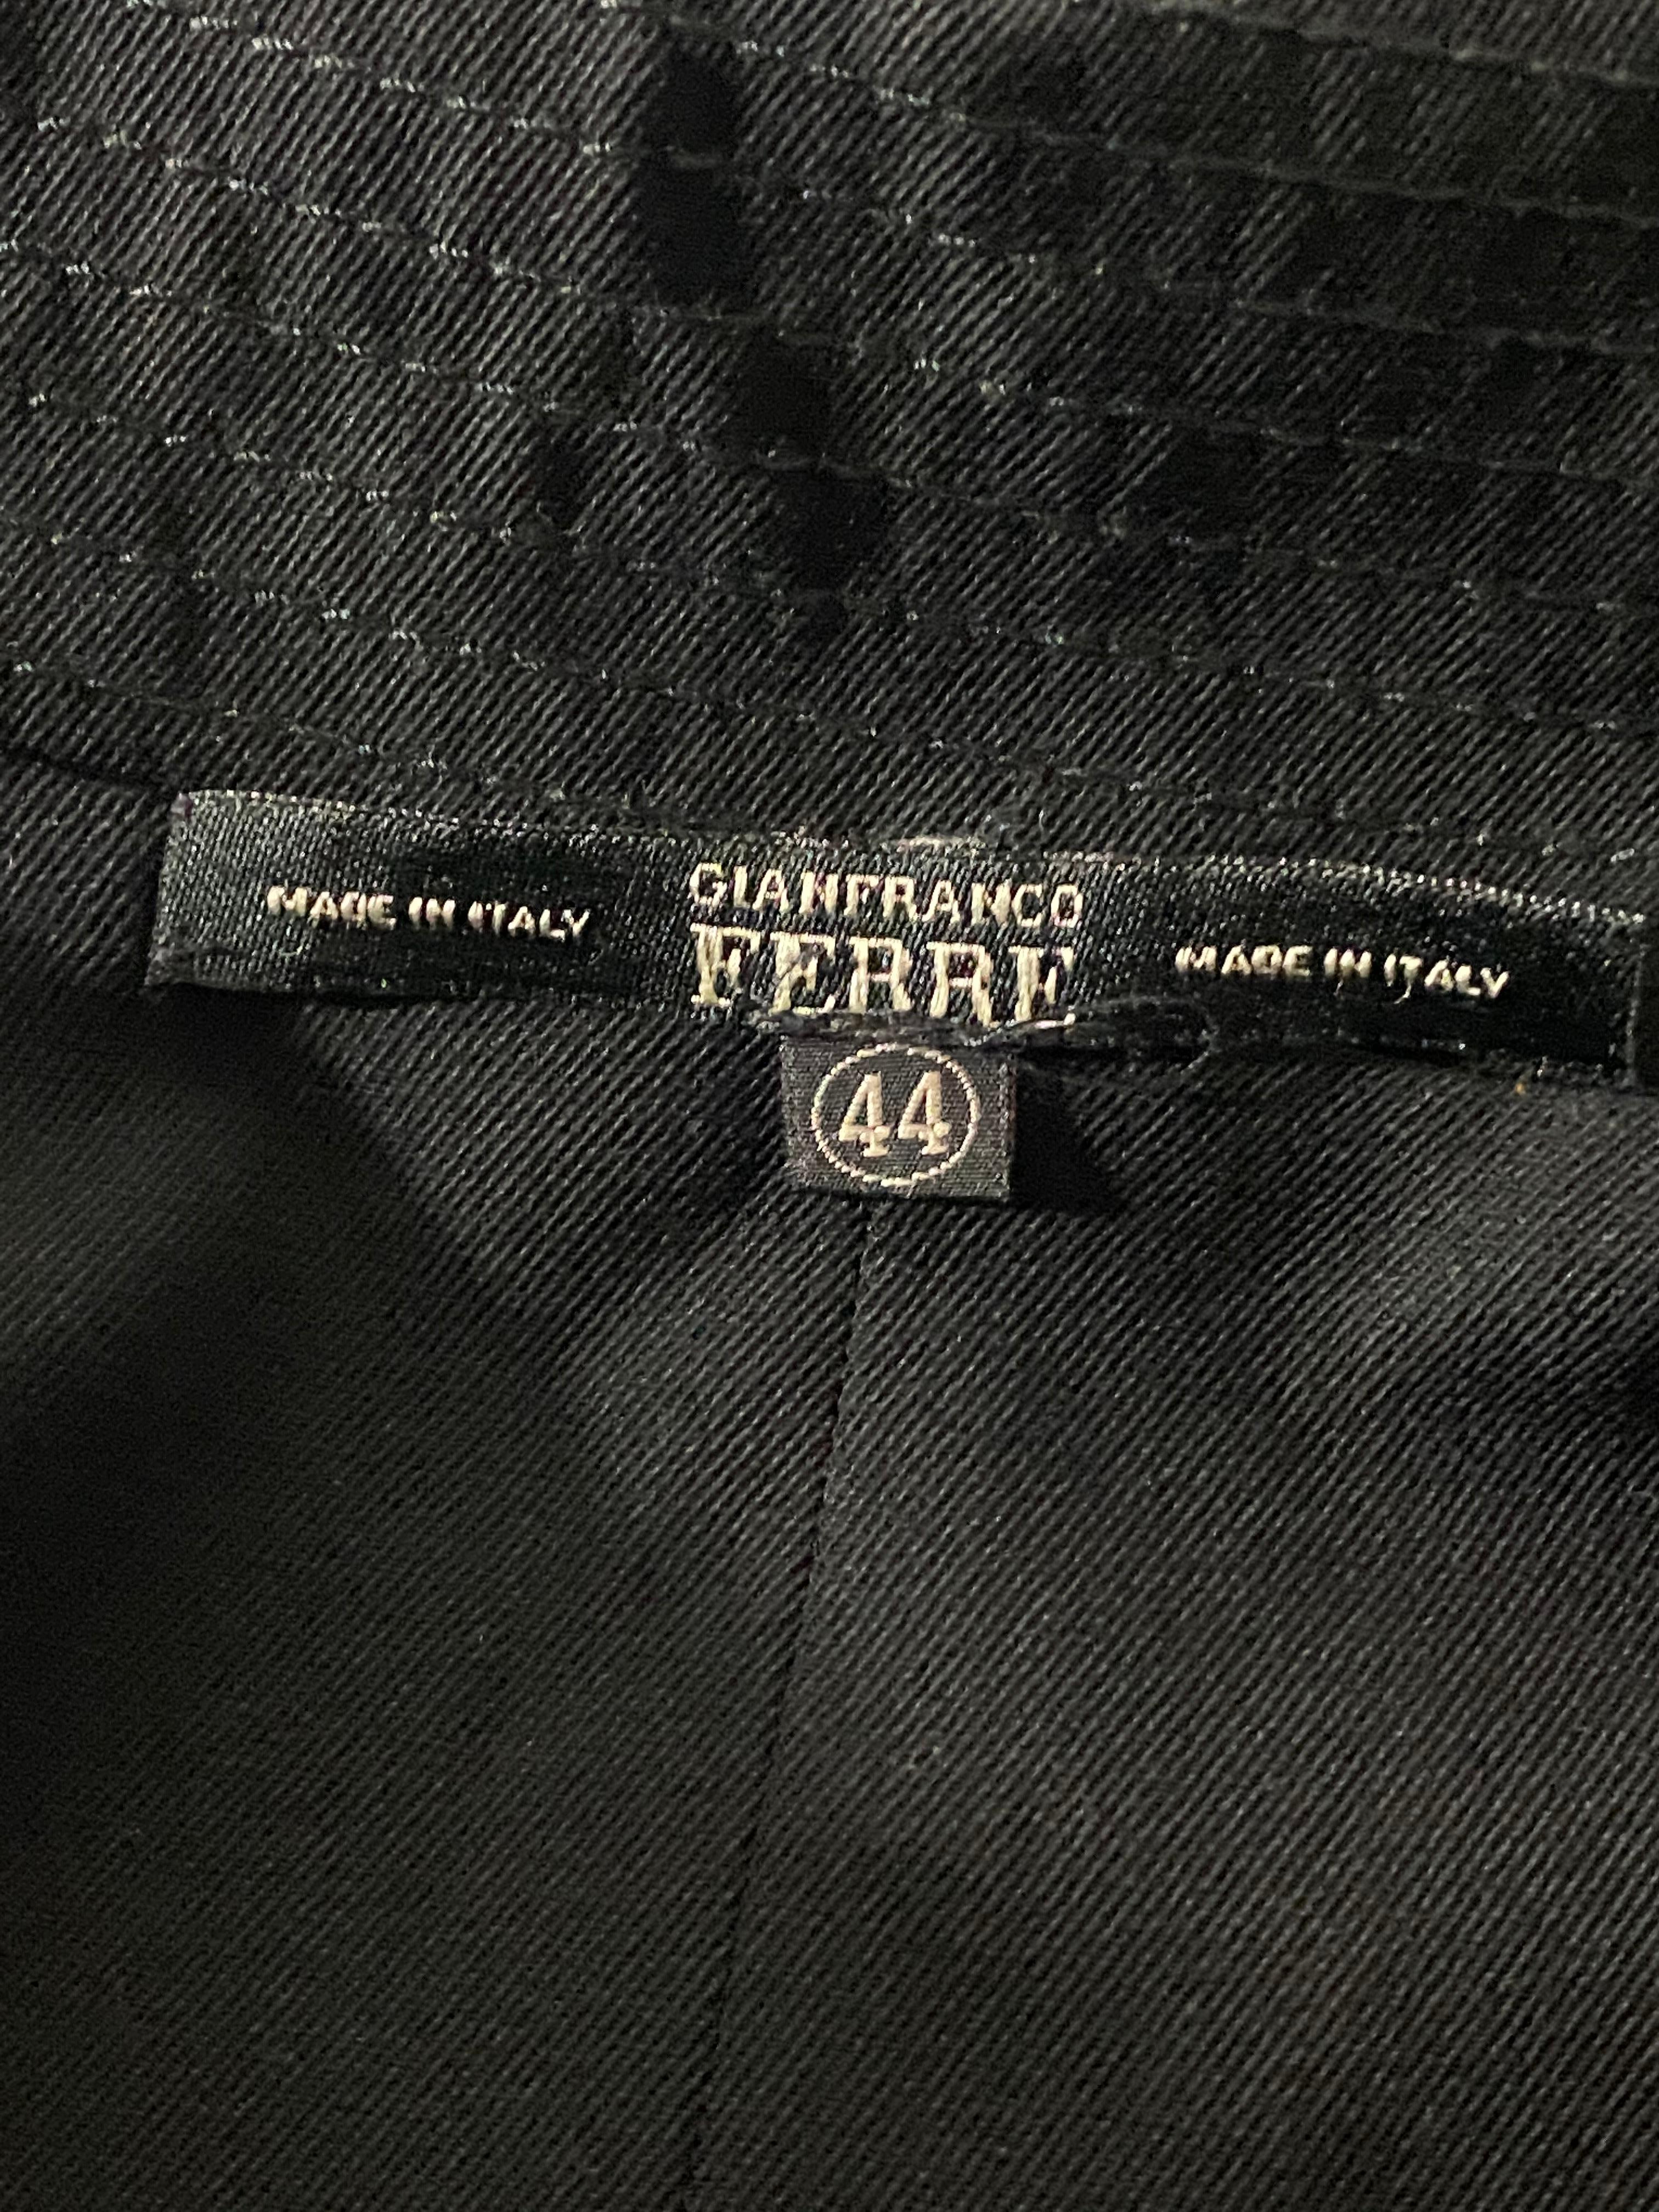 Gianfranco Ferre Black Wool Long Coat Jacket w/ Belt Size 44 For Sale 11